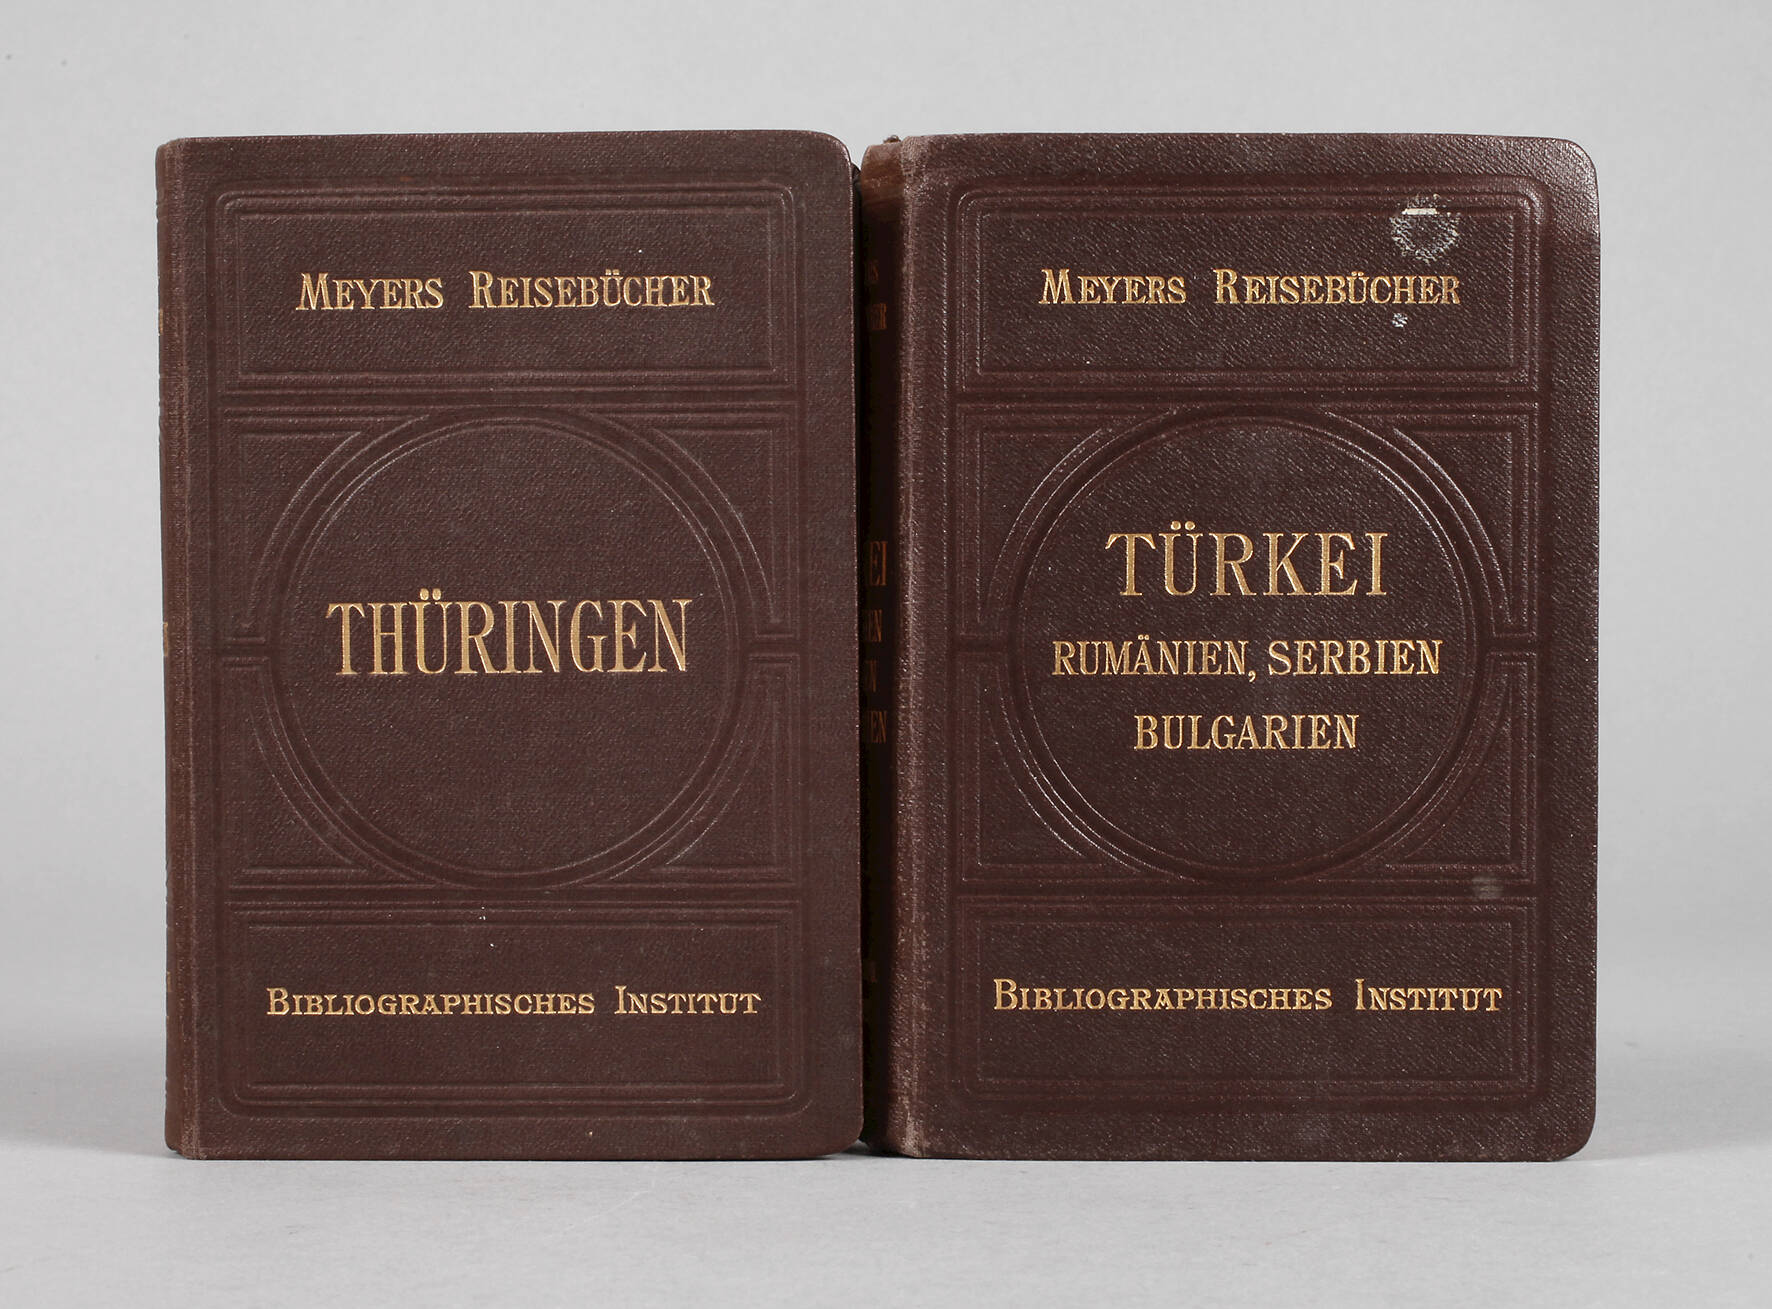 Zwei Meyers Reisebücher